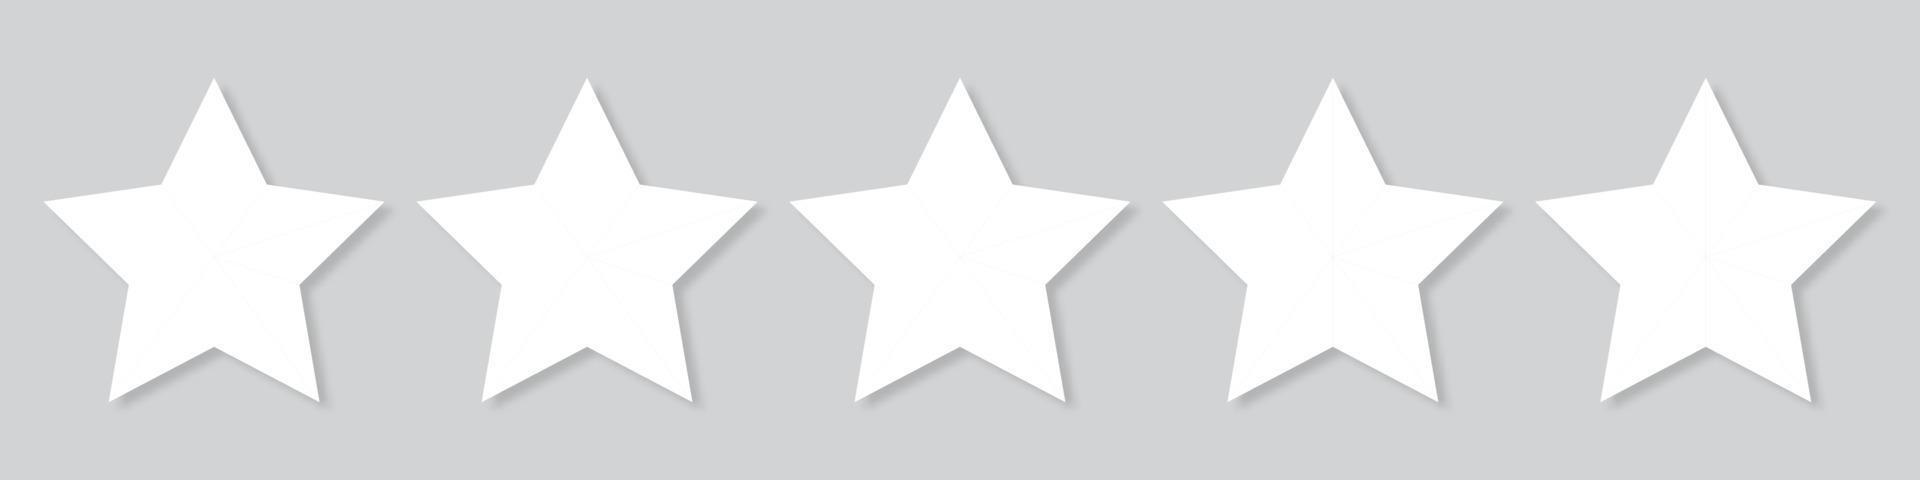 ícones de classificação de qualidade de cinco estrelas brancos. ícone de 5 estrelas. signo de cinco estrelas. símbolo de classificação. ilustração vetorial vetor